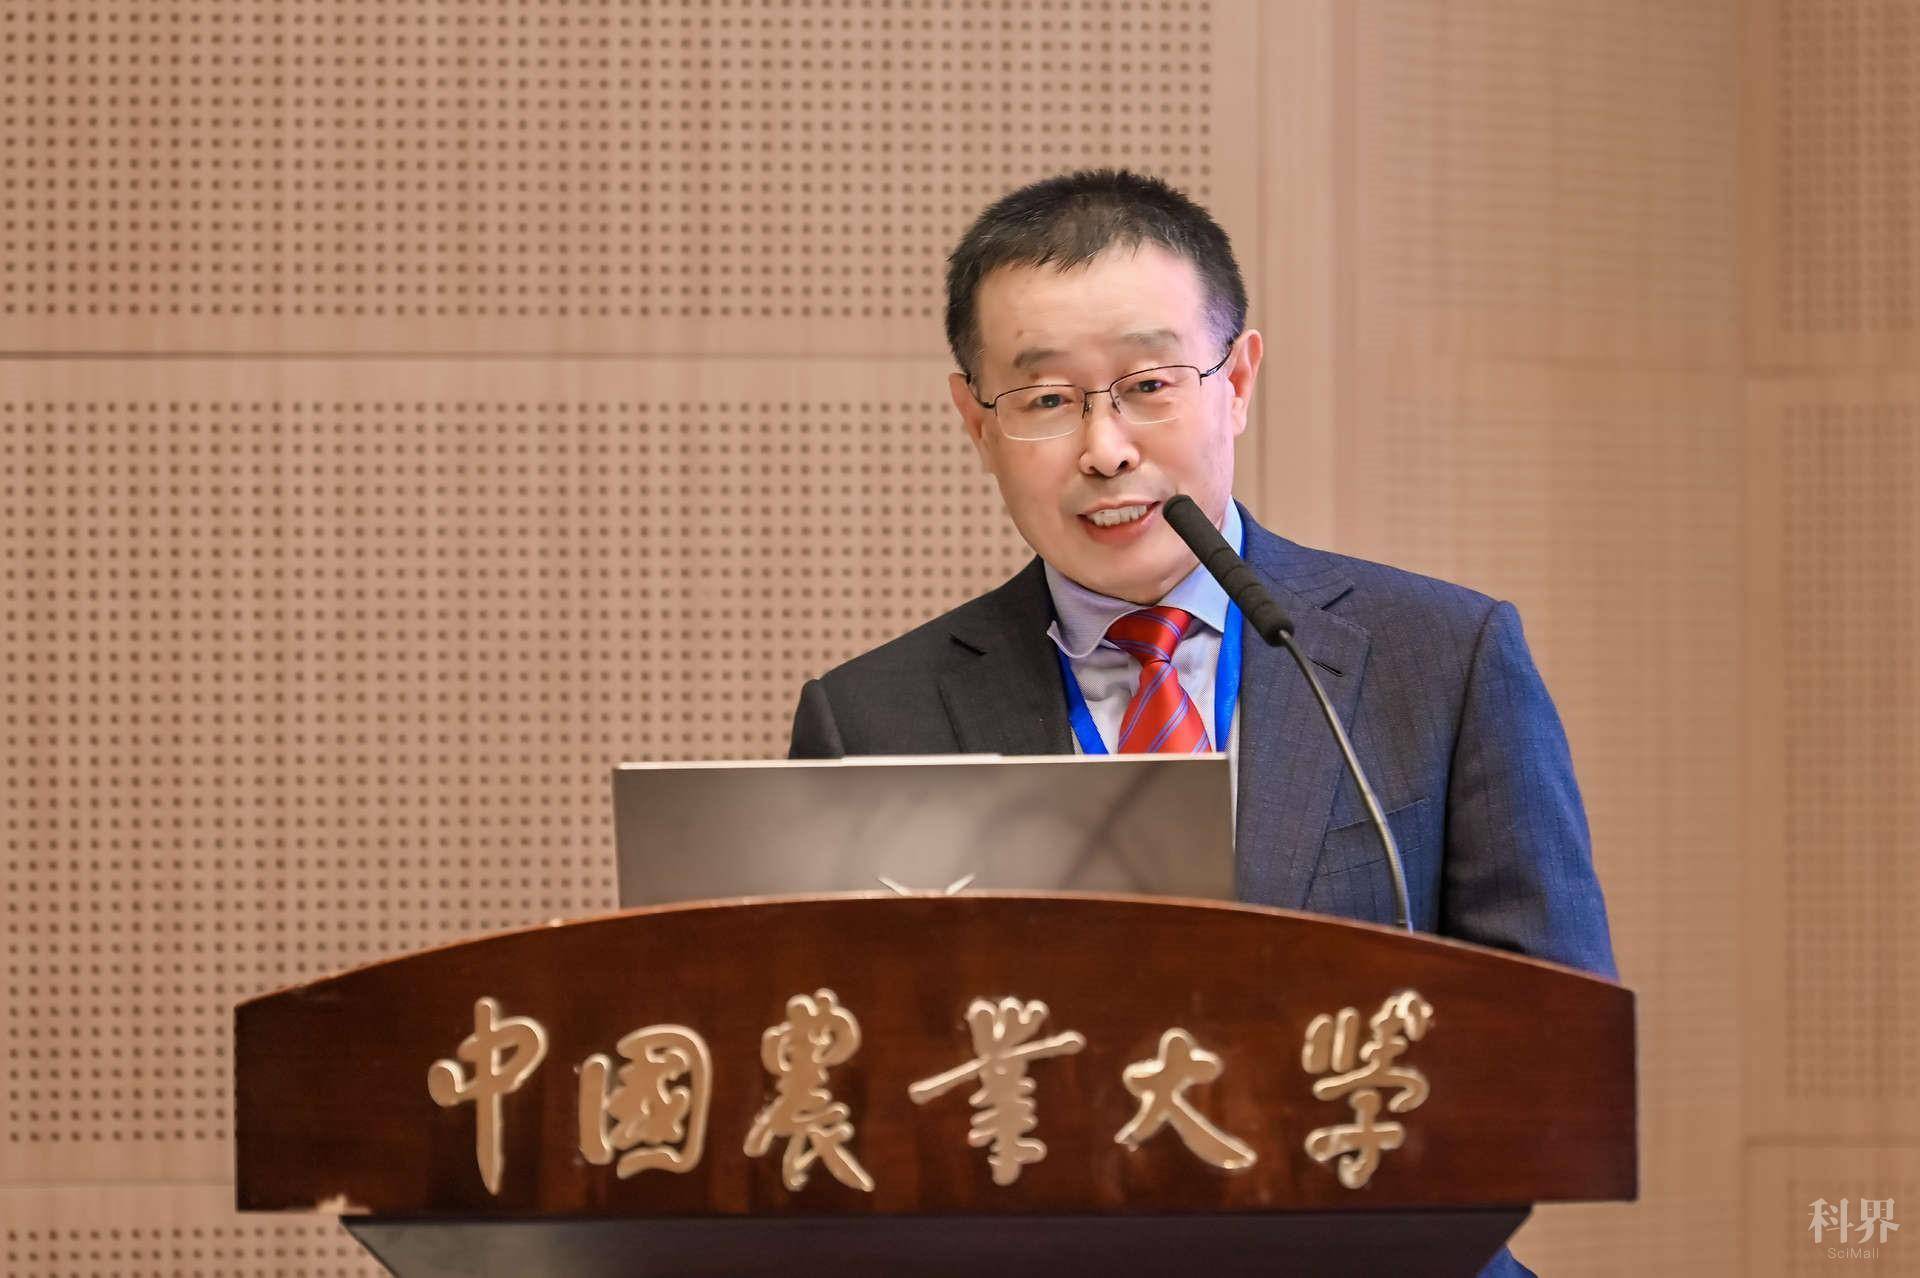 第十届中国农业机械化展望大会圆满召开